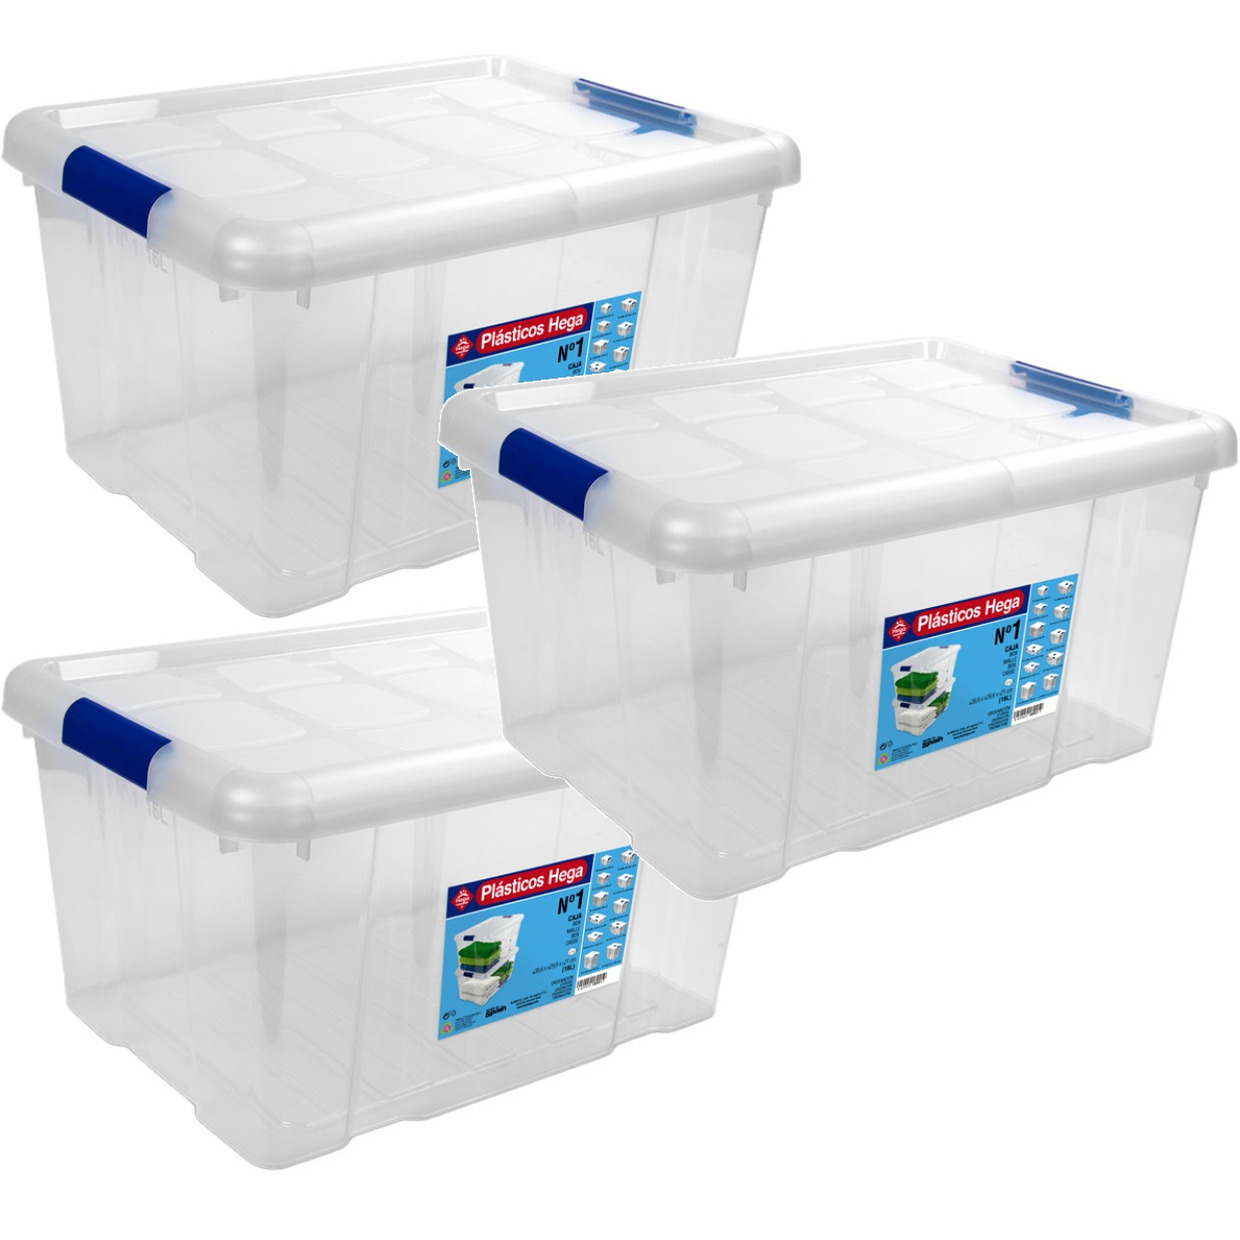 7x Opbergboxen-opbergdozen met deksel 16 liter kunststof transparant-blauw